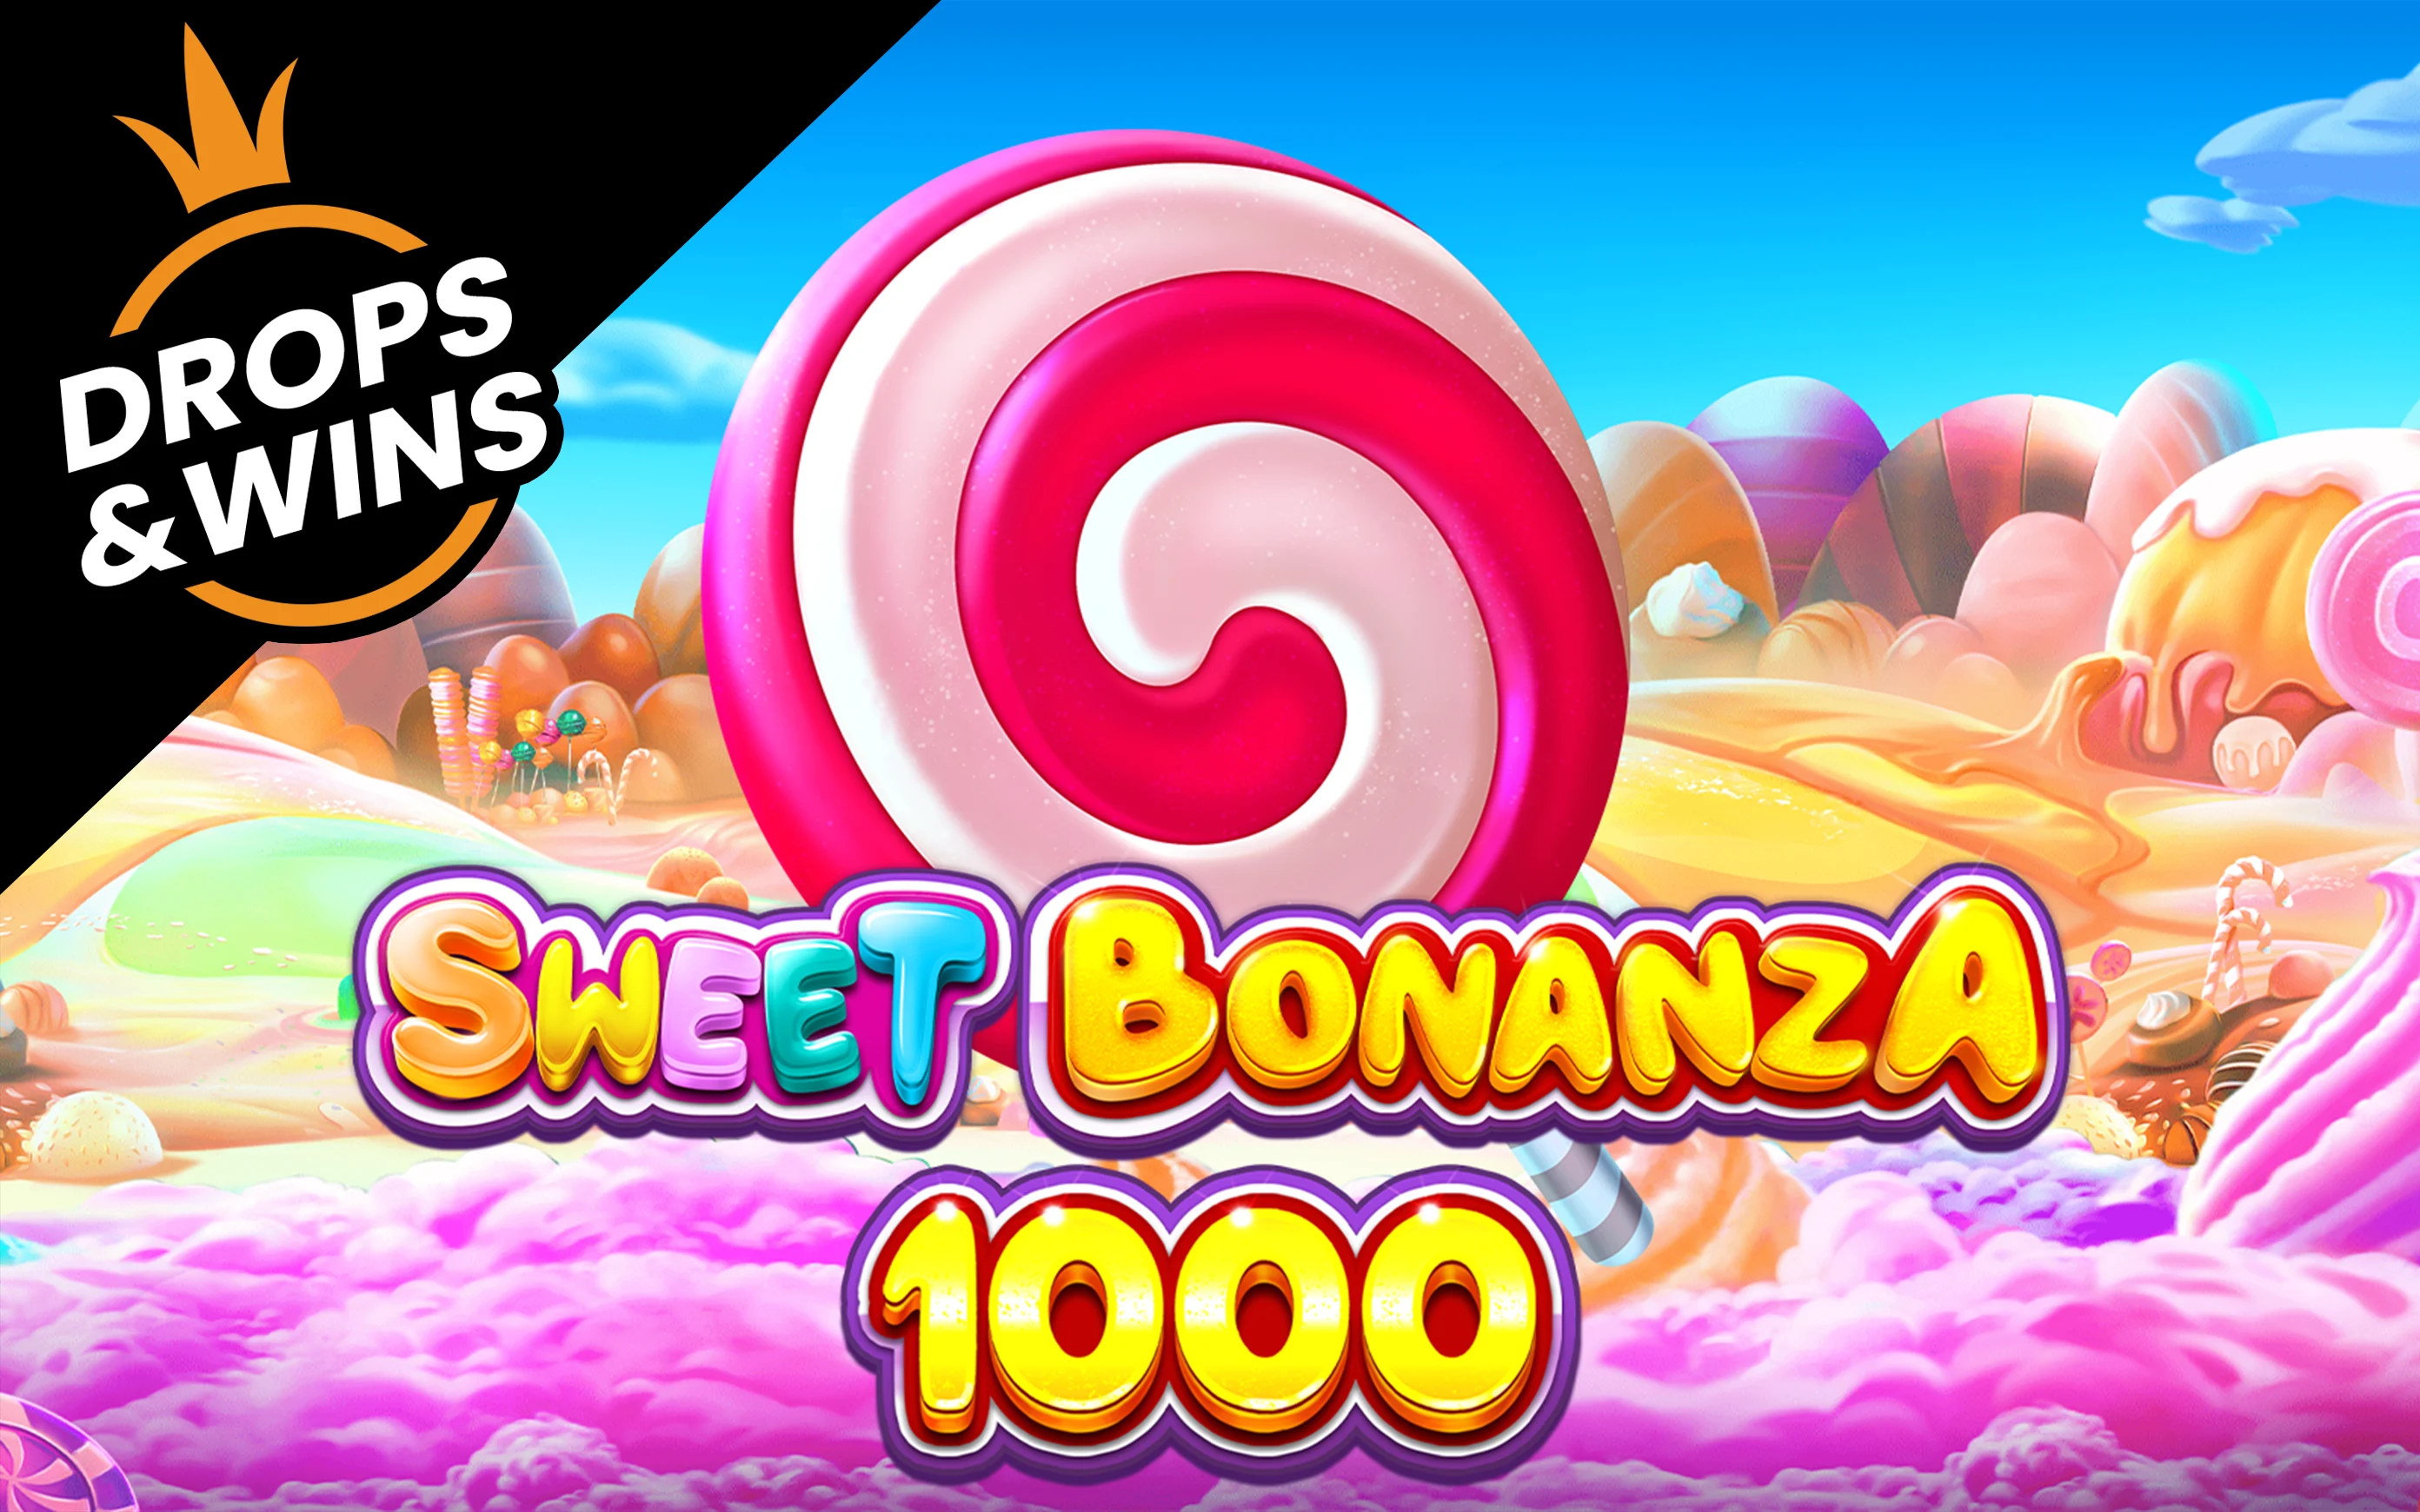 Luaj Sweet Bonanza 1000 në kazino Starcasino.be në internet